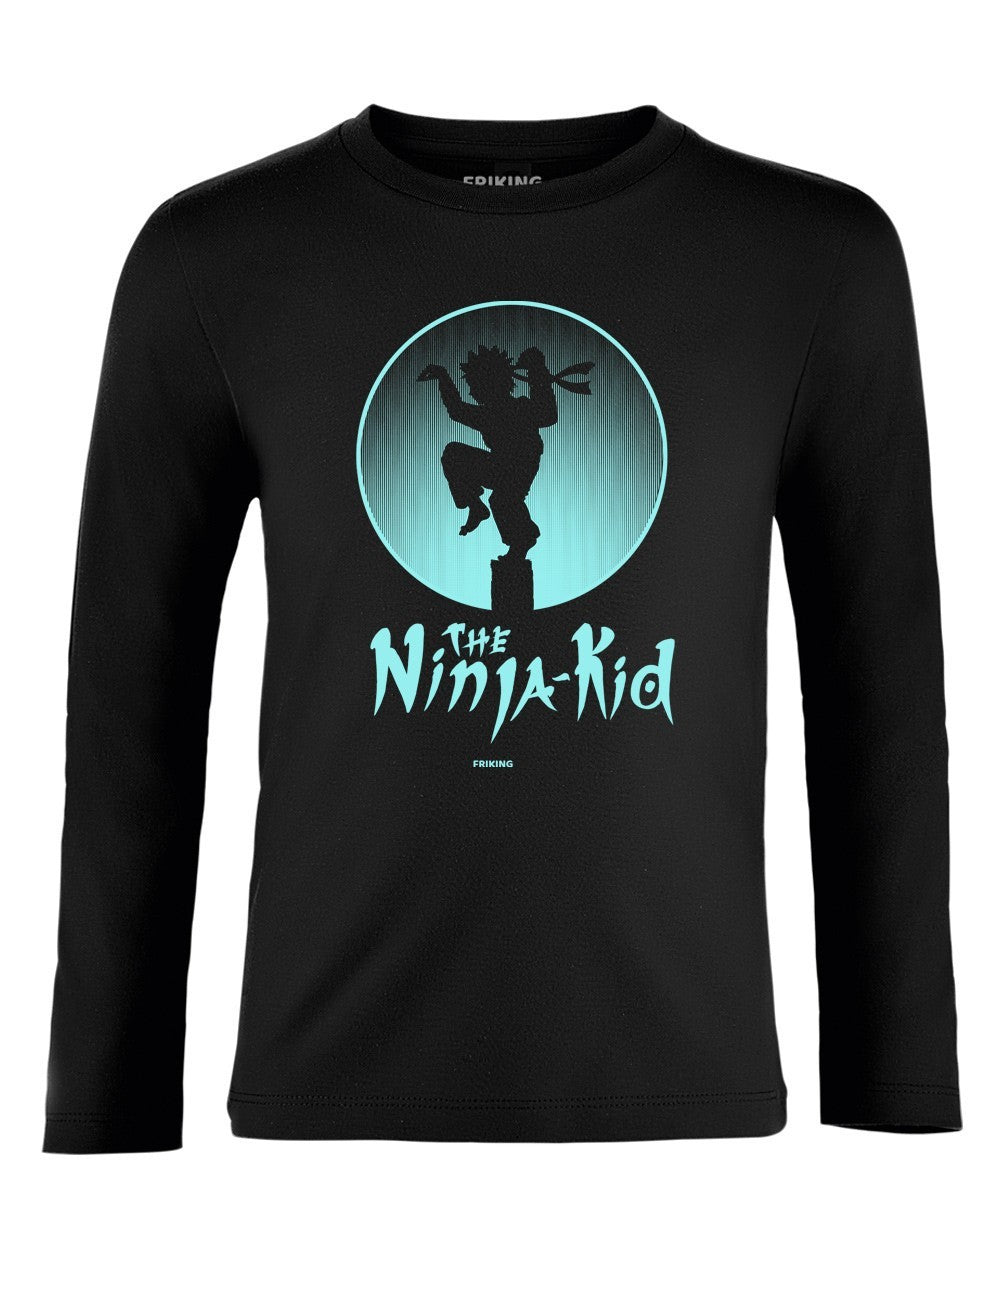  Ninja Kid 